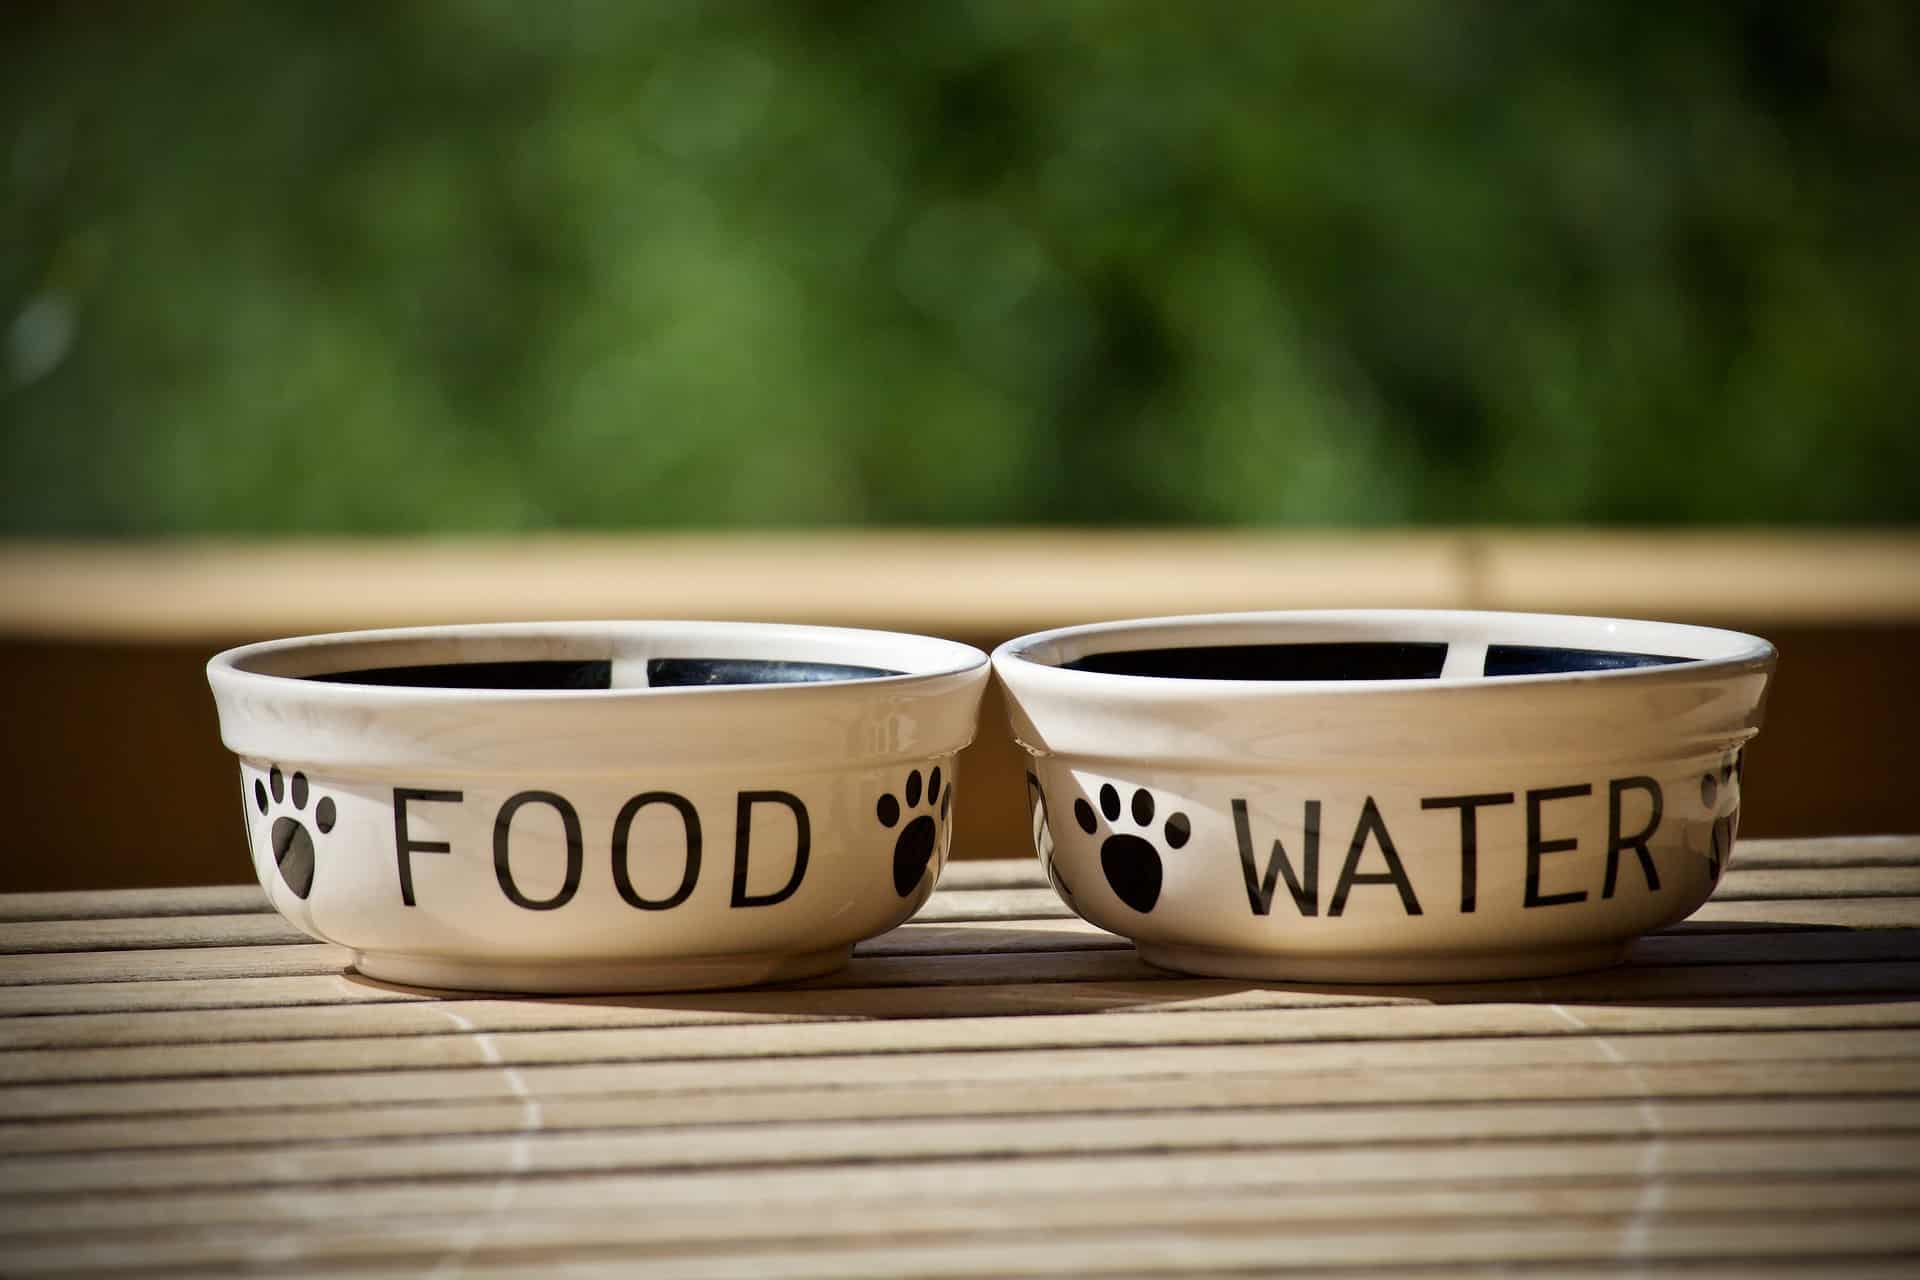 Näpfe für Futter und Wasser für ein entspanntes Verreisen mit dem Hund. /Foto: Luisella Planeta (pixabay)